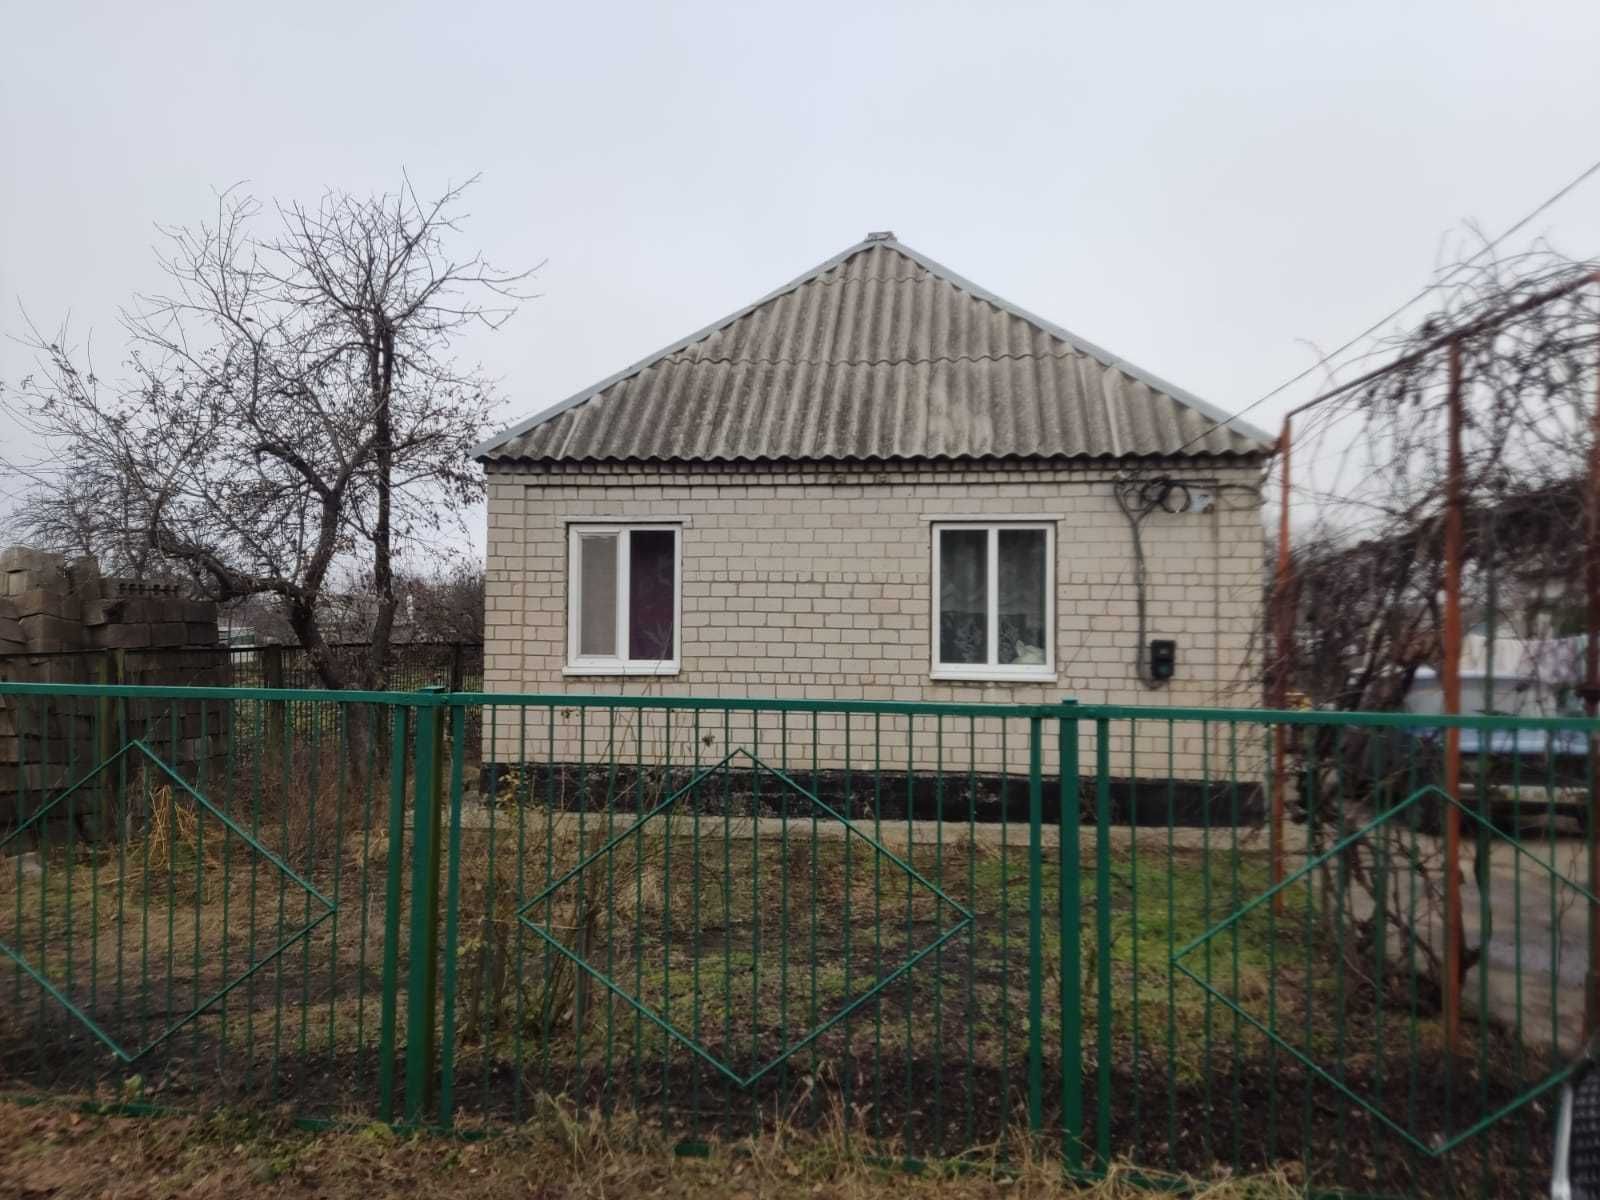 Продаж приватного будинку в мікрорайоні Таромське